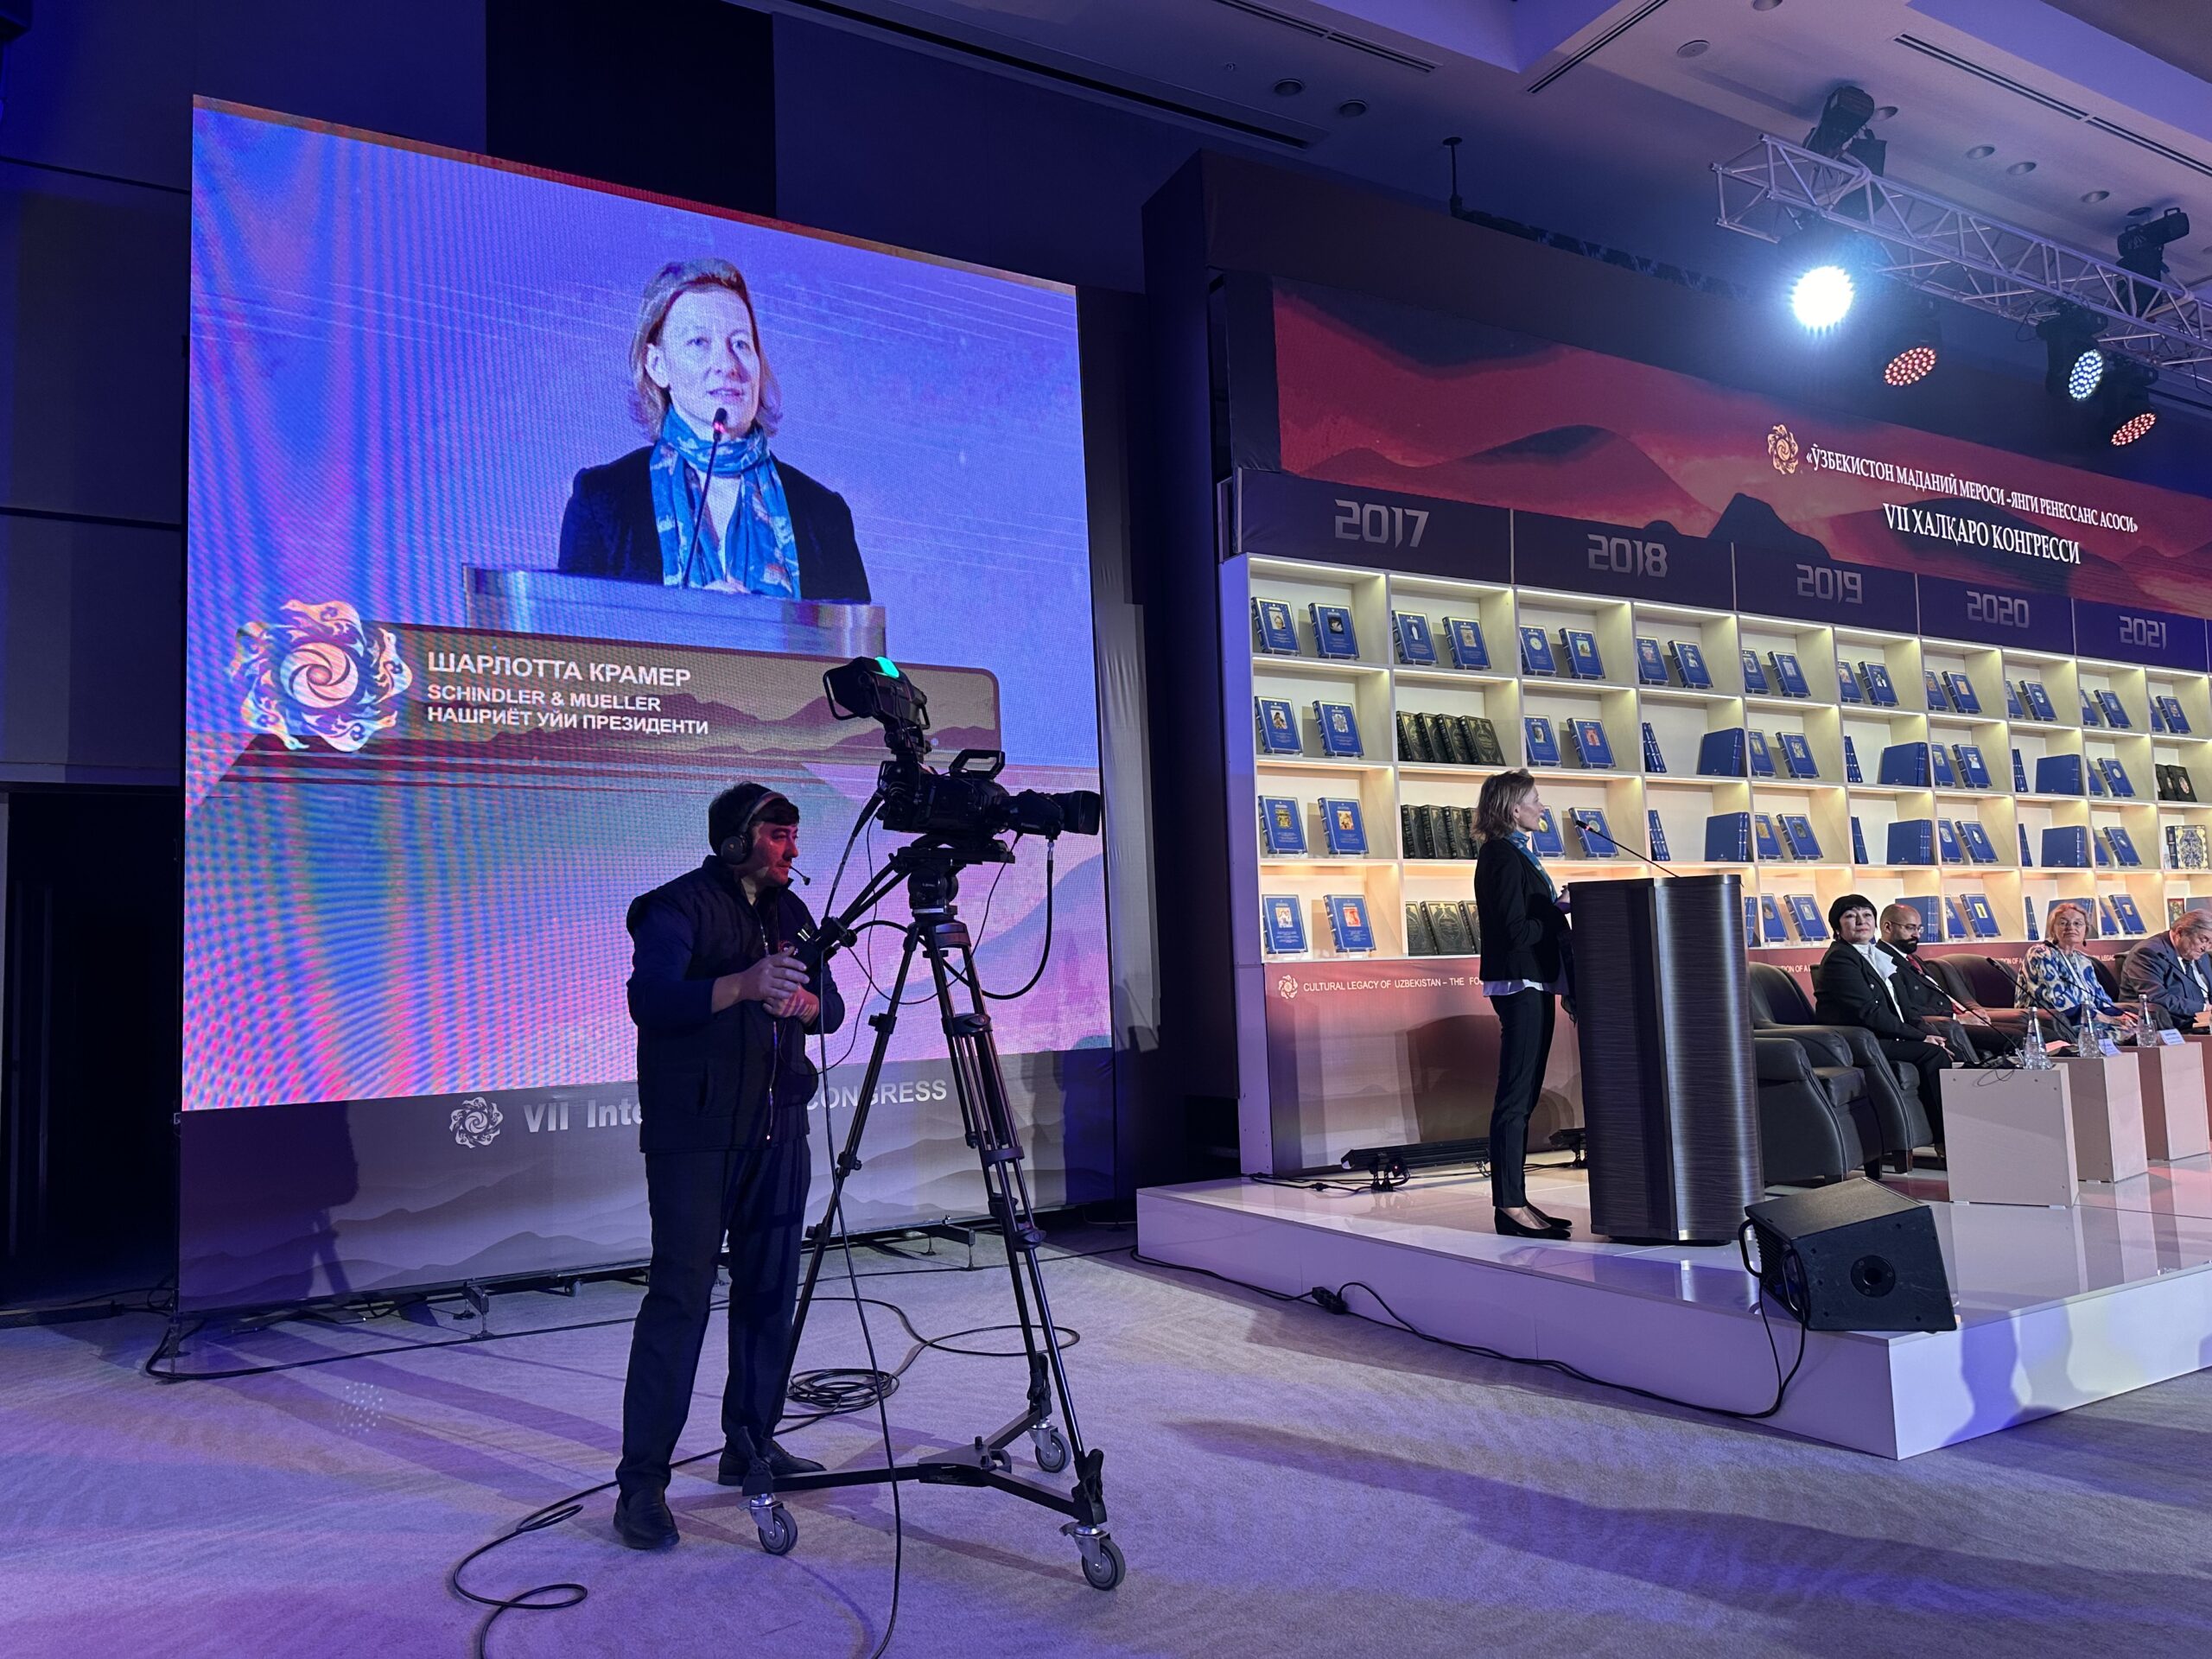 Eindrücke aus Samarkand, Usbekistan: Unsere Verlegerin Charlotte Kramer hinter dem Rednerpult auf der Bühne mit Kamera und Bildeinblendung auf deiner grossen Leinwand